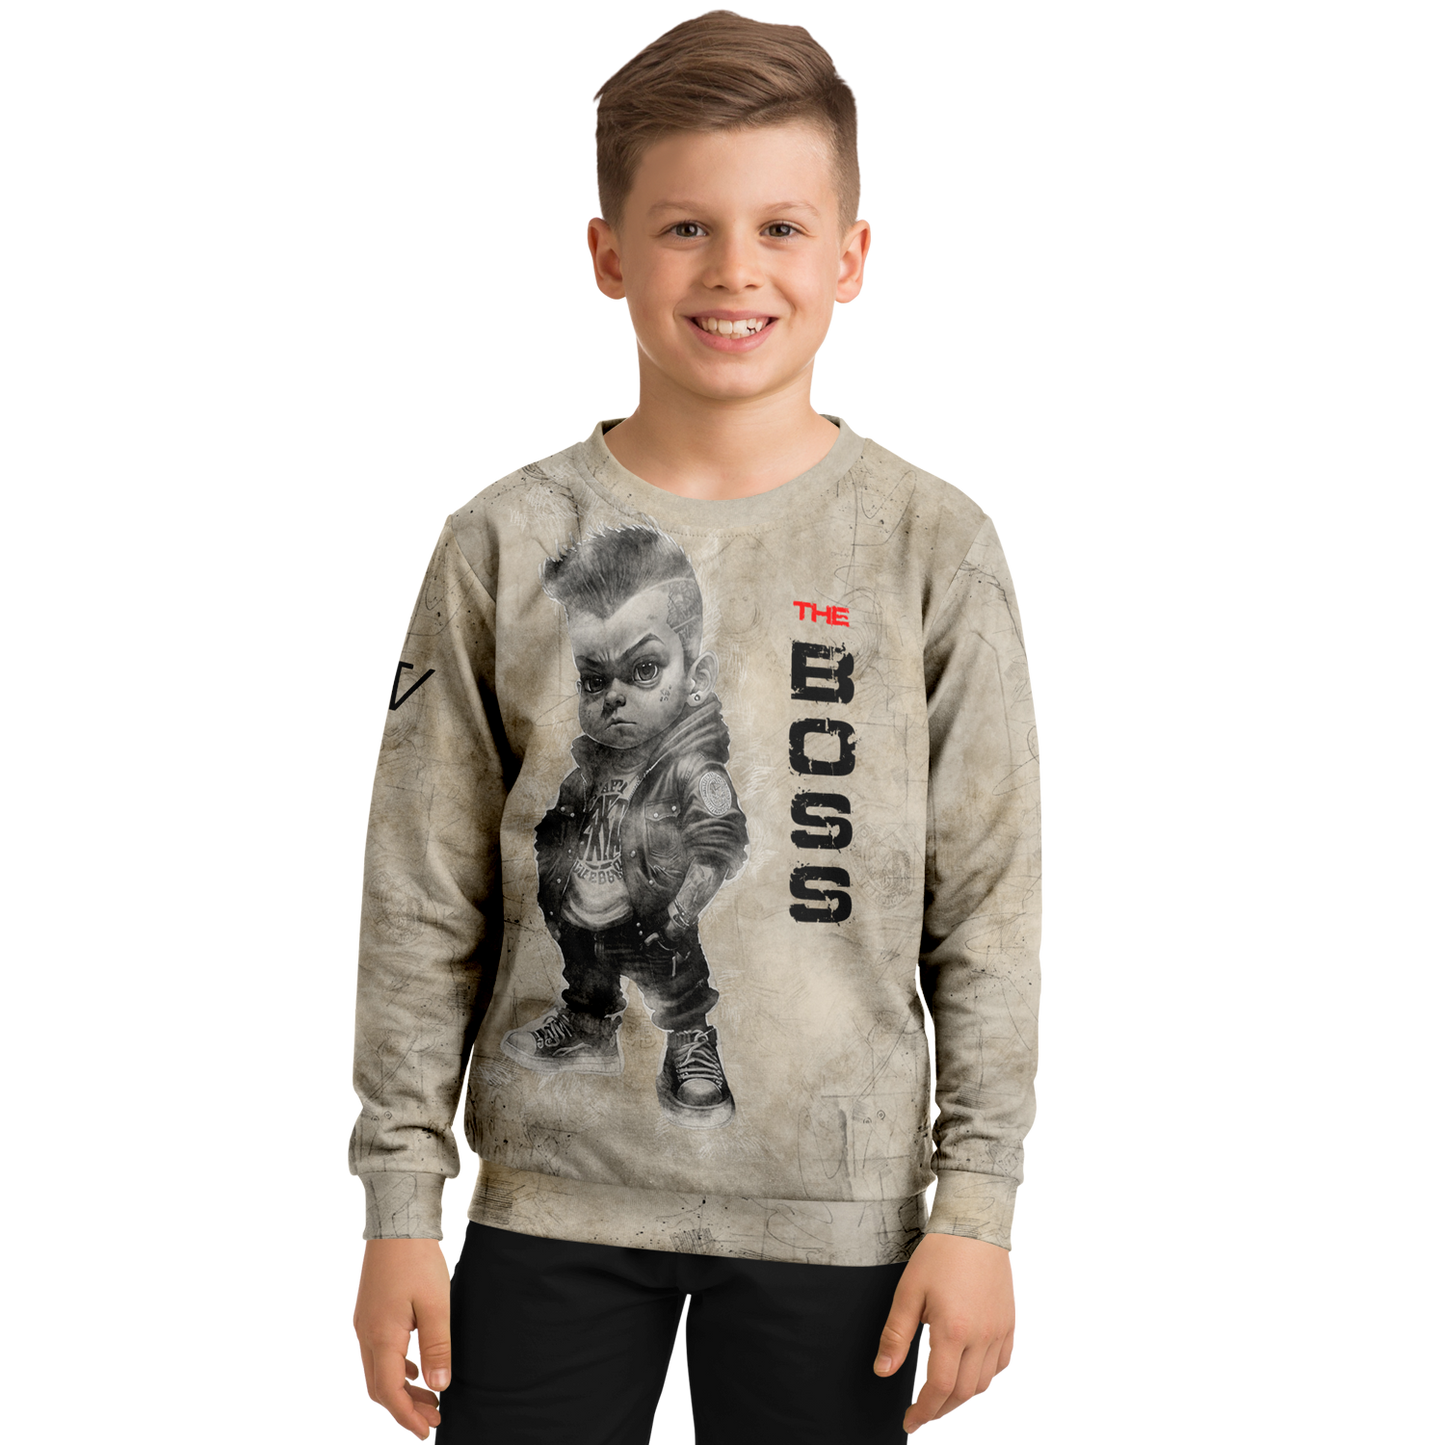 Athletic Kids/Youth Sweatshirt – AOP 013